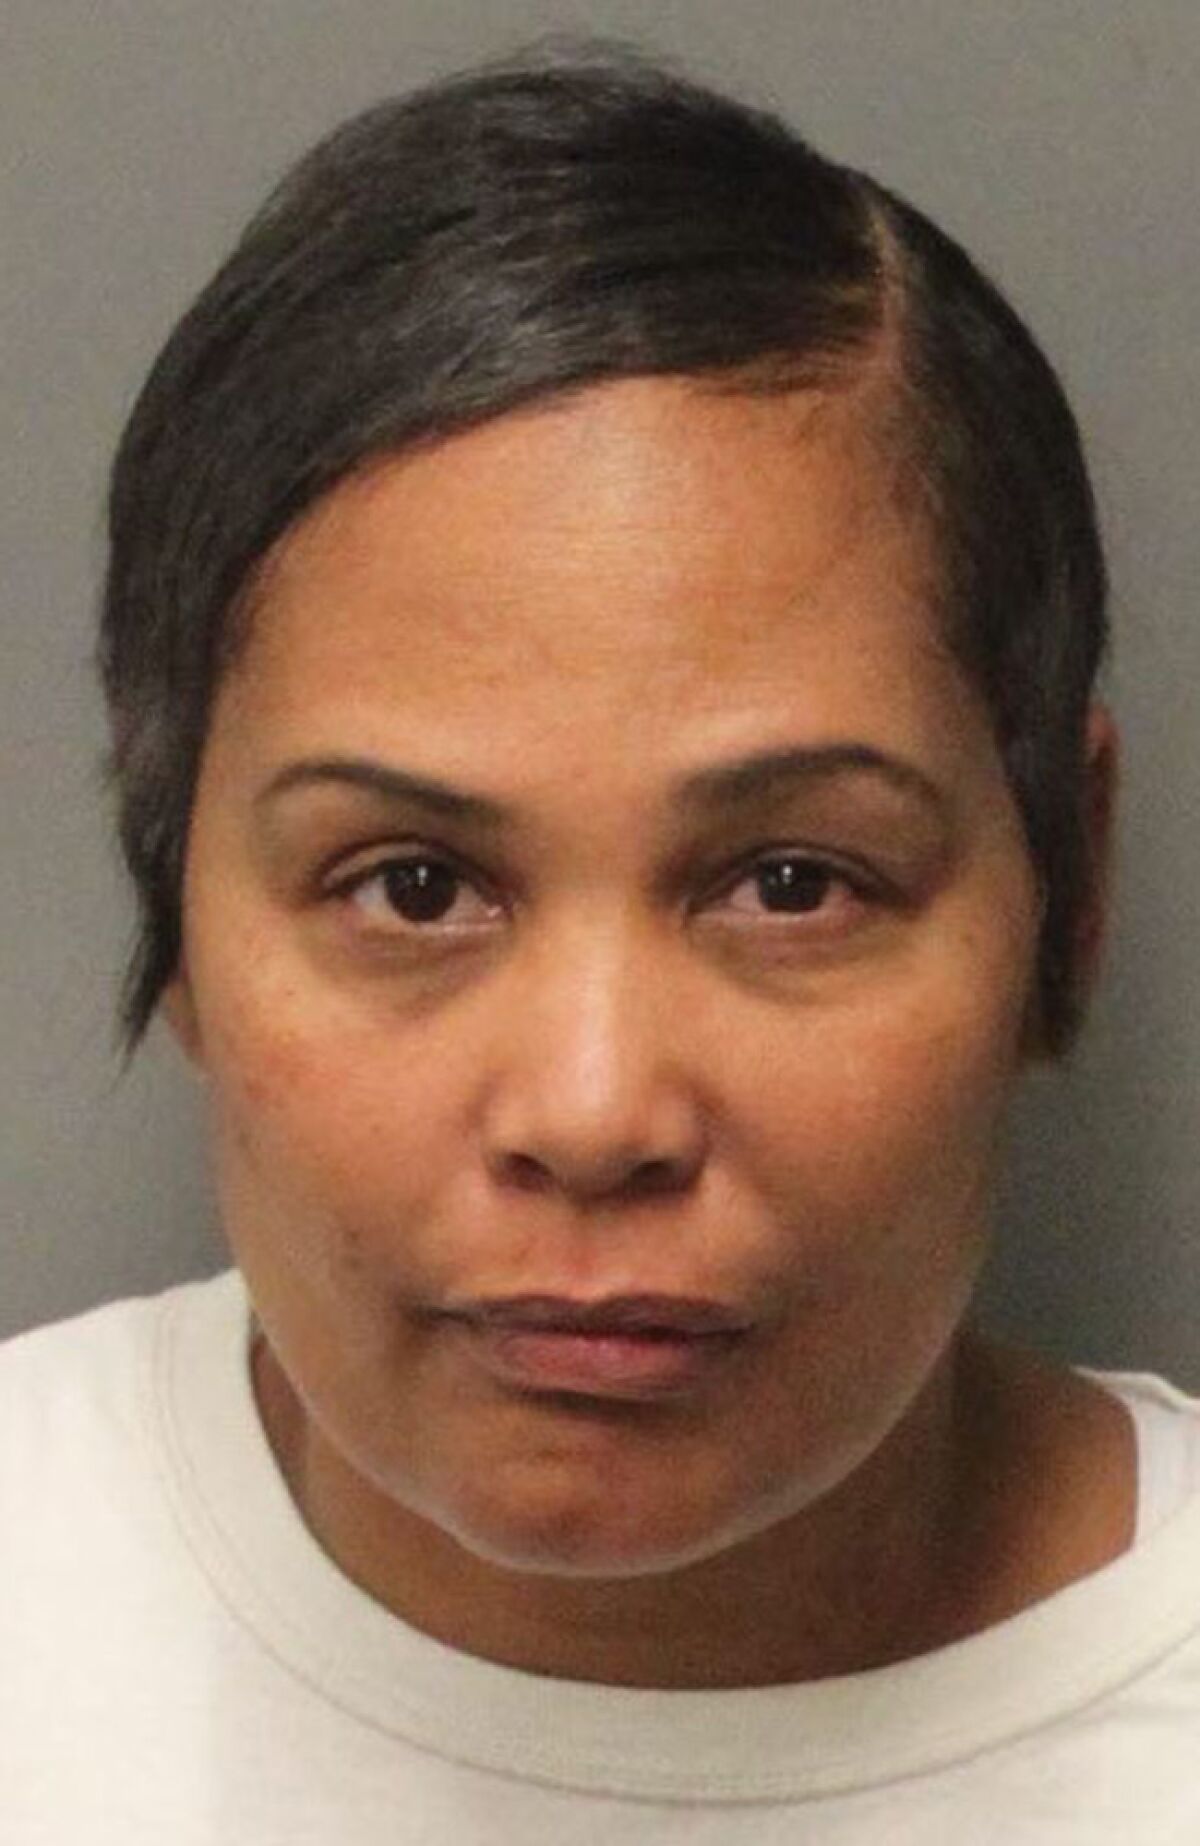 Mug shot of Sherra Wright after her arrest on Dec. 15, 2017.